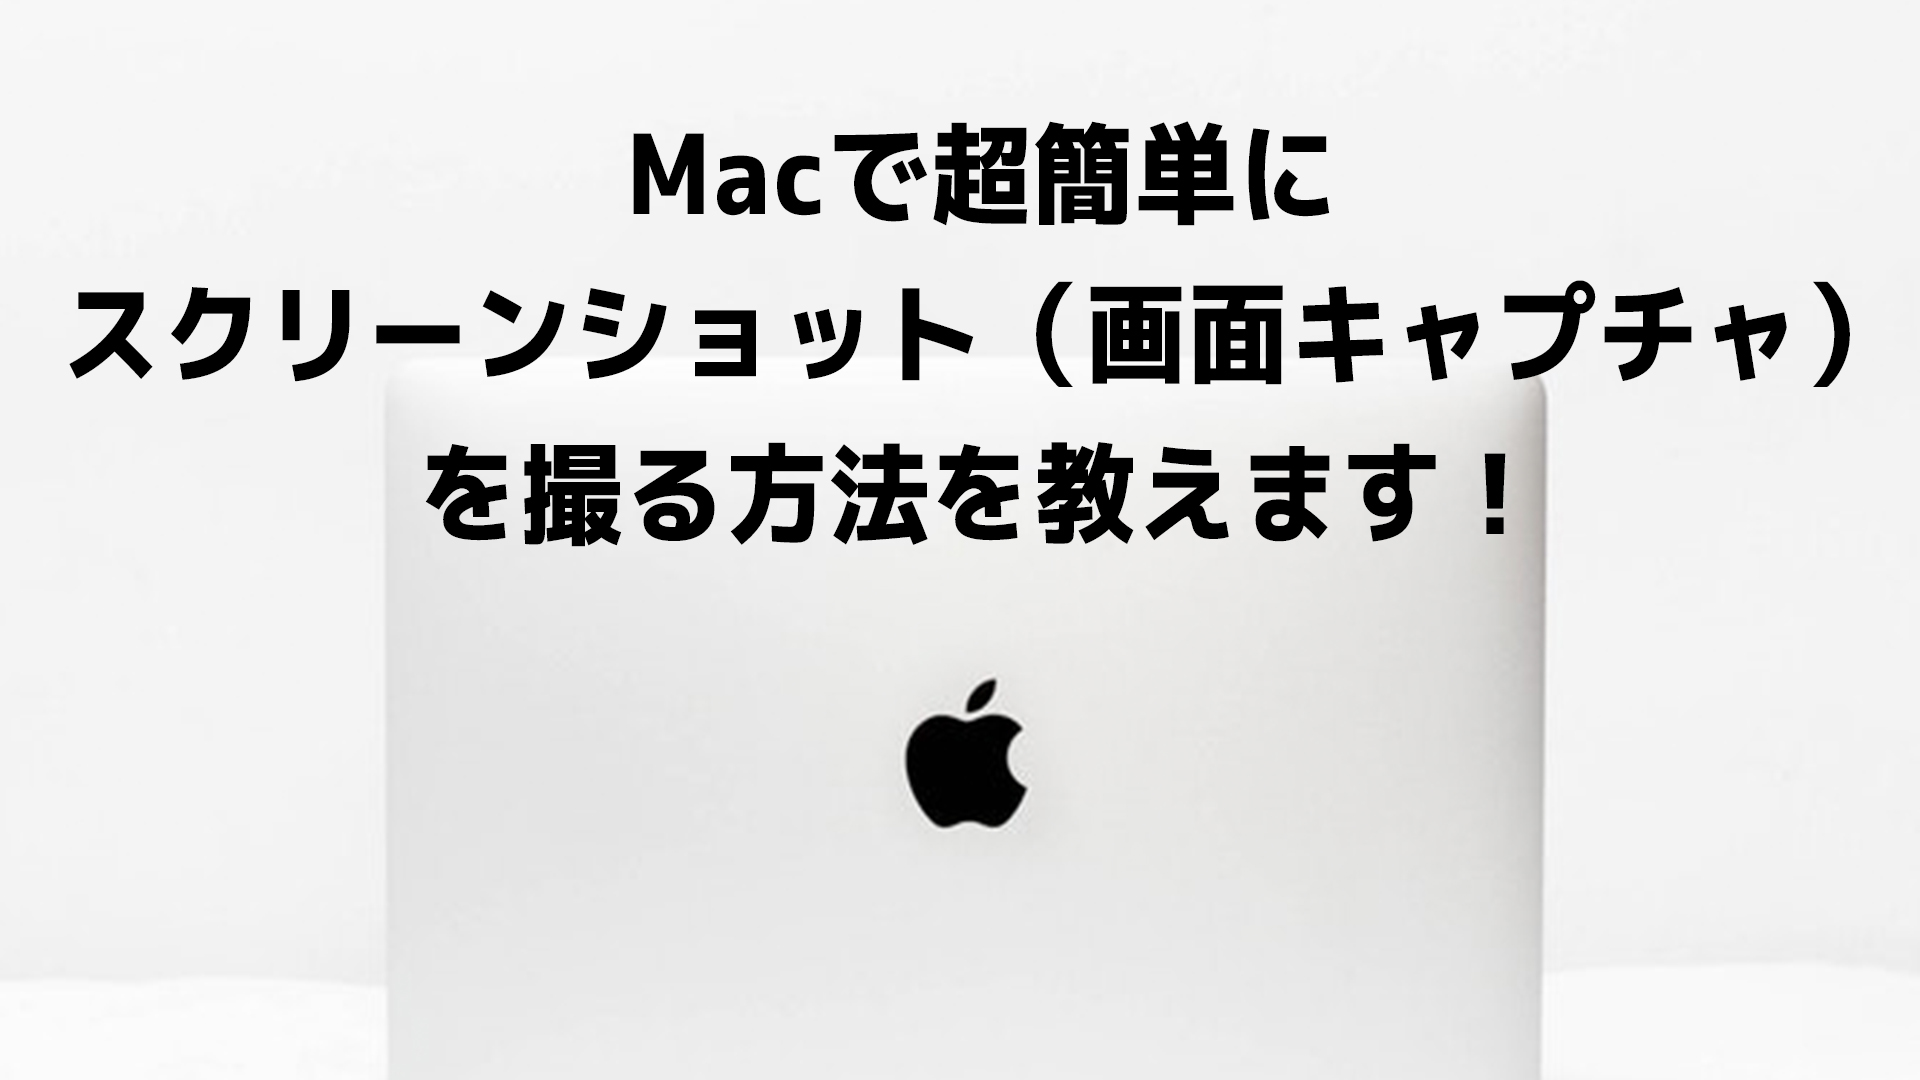 キャプチャ mac 画面 Macの画面録画を内部音声だけでする方法〜Background Musicの使い方〜